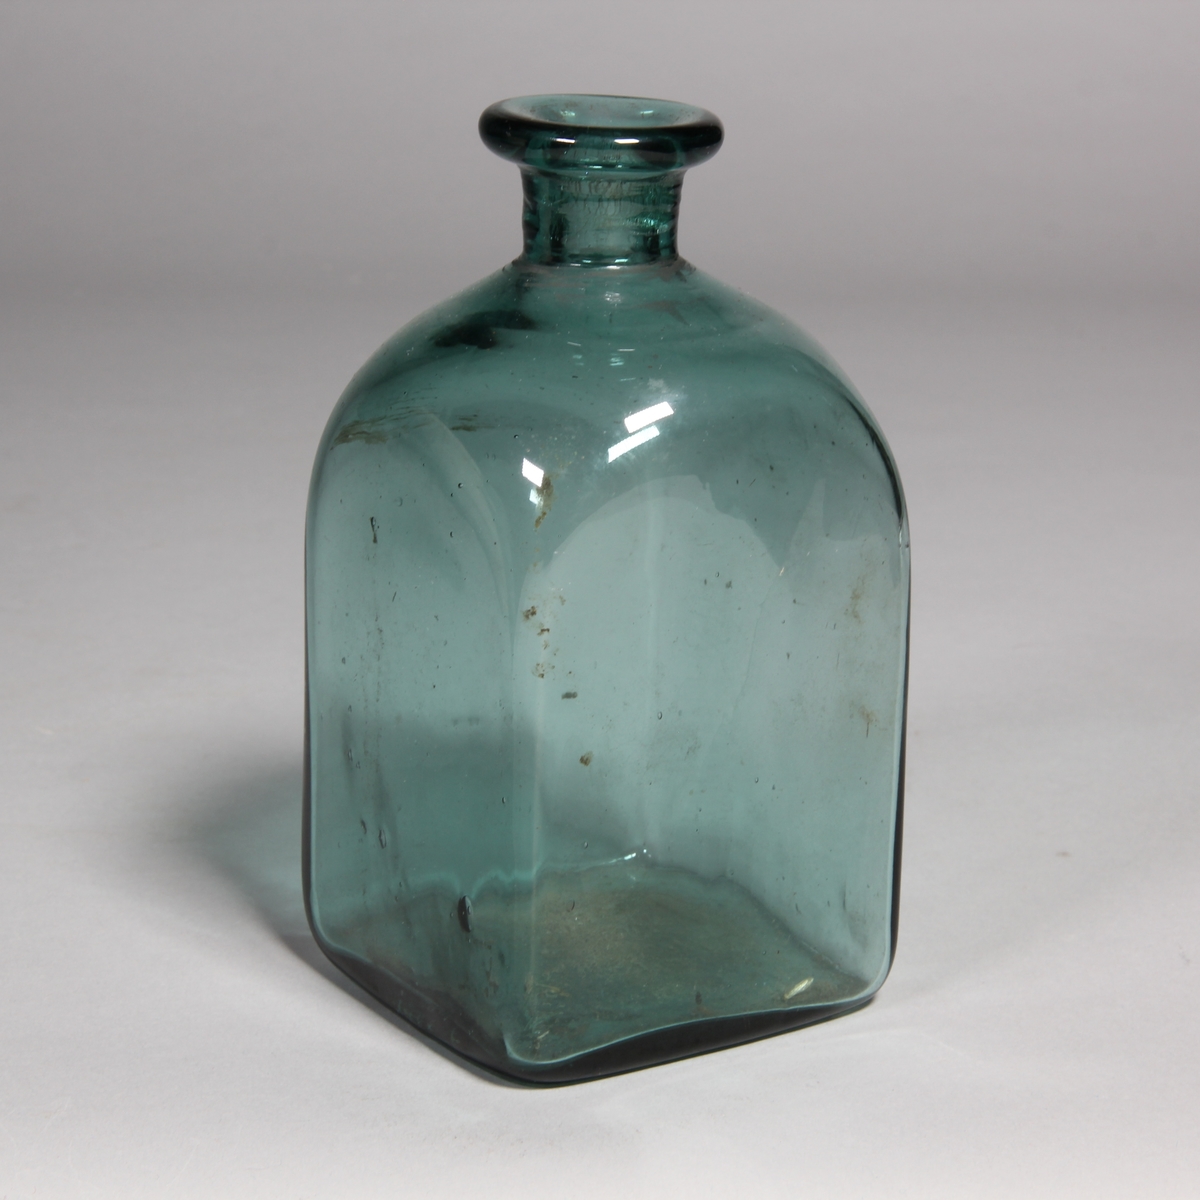 Flaska av grönt glas, kvadratisk med utvikt mynning.